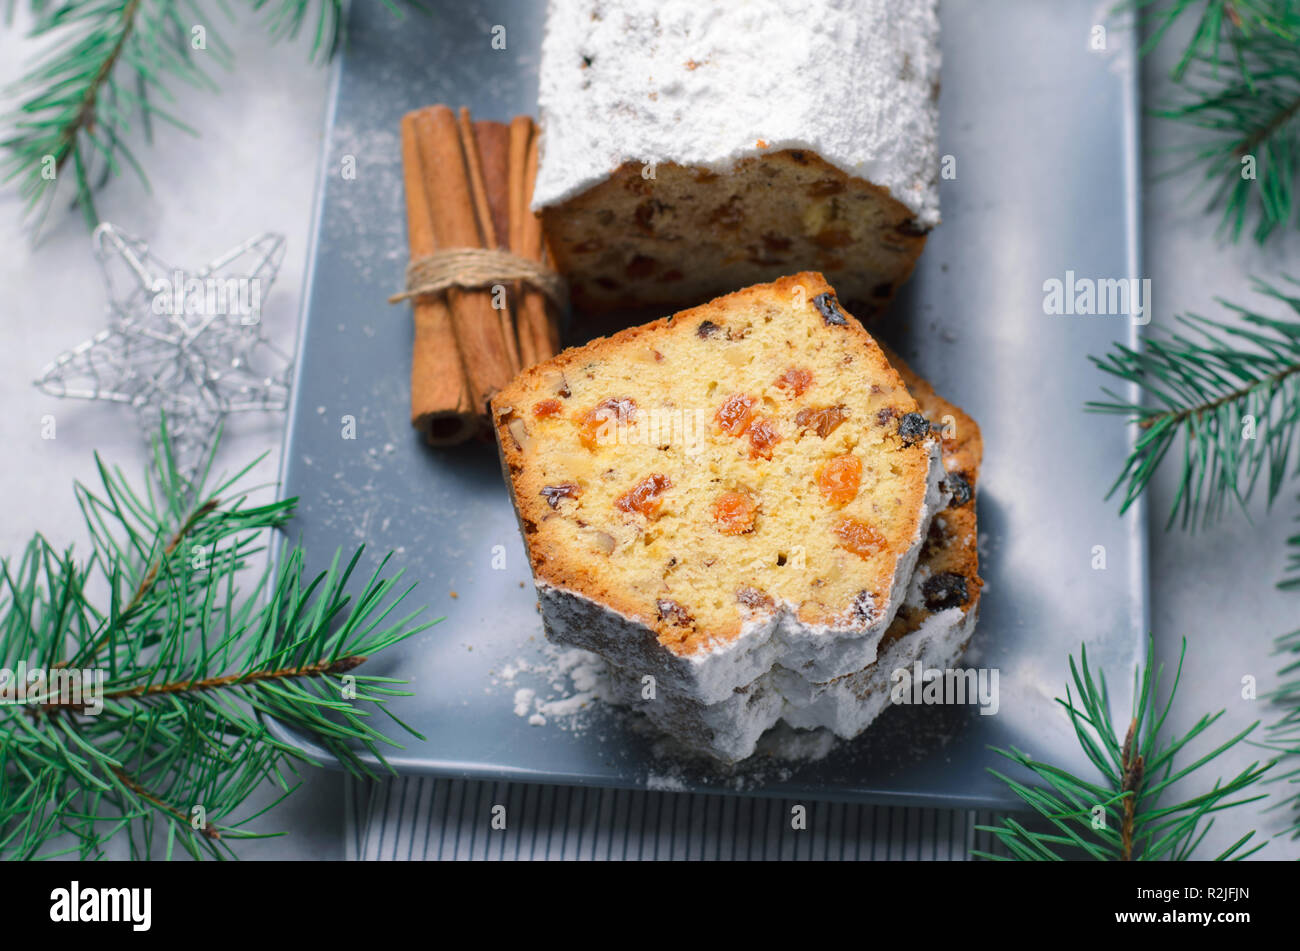 Obst und Mutter Brot Kuchen mit Puderzucker bestäubt, Weihnachten und Winter Urlaub gönnen, hausgemachte Kuchen mit Rosinen auf grauem Hintergrund Stockfoto